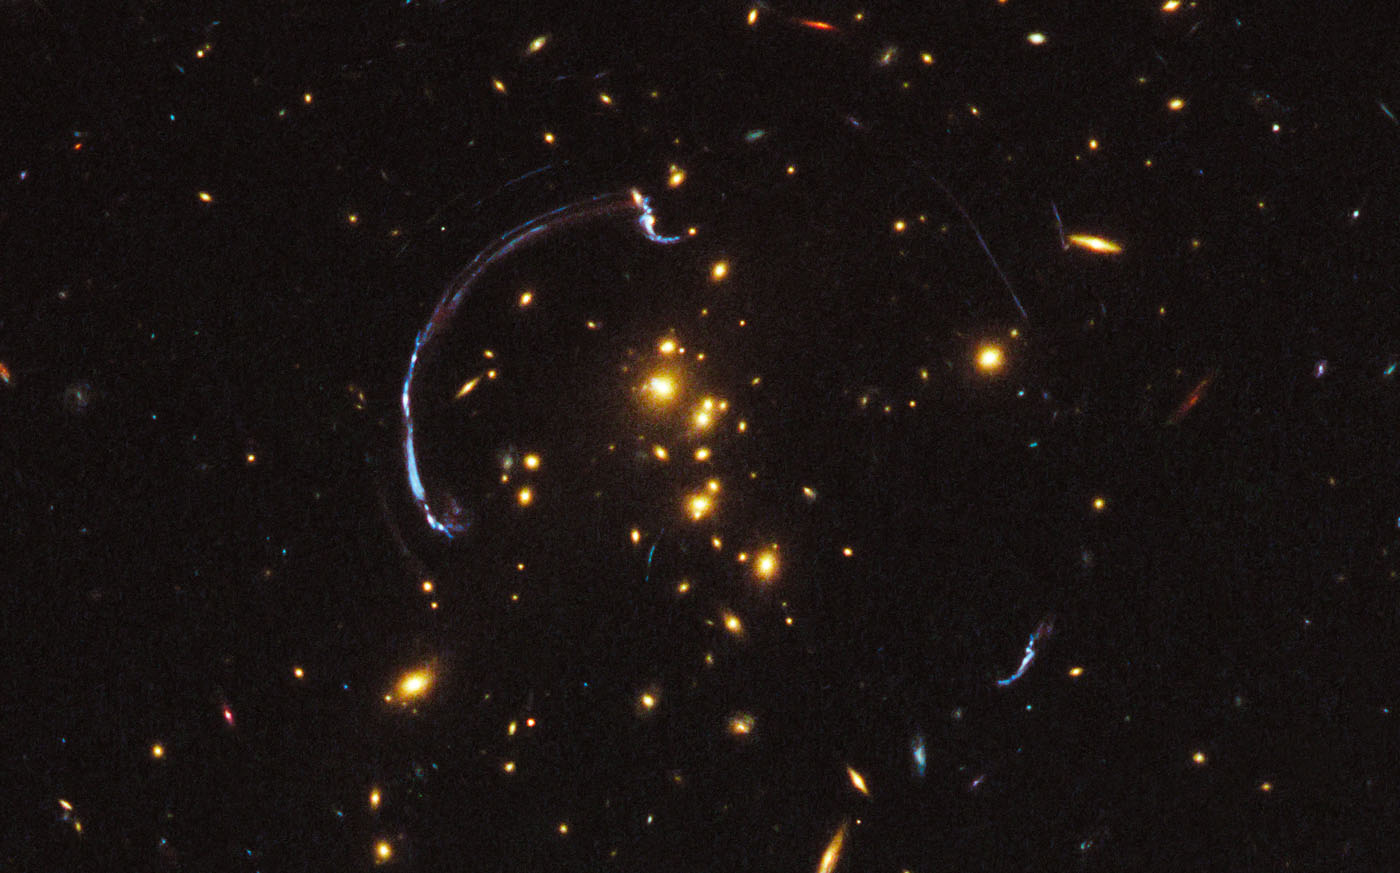 Gracias a al presencia de lentes gravitatorias naturales en el espacio, esta imagen es un acercamiento de la más brillante galaxia conocida hasta el momento. Imagen: NASA, ESA, J. Rigby (NASA Goddard Space Flight Center), K. Sharon (Kavli Institute for Cosmological Physics, University of Chicago), y M. Gladders y E. Wuyts (University of Chicago)